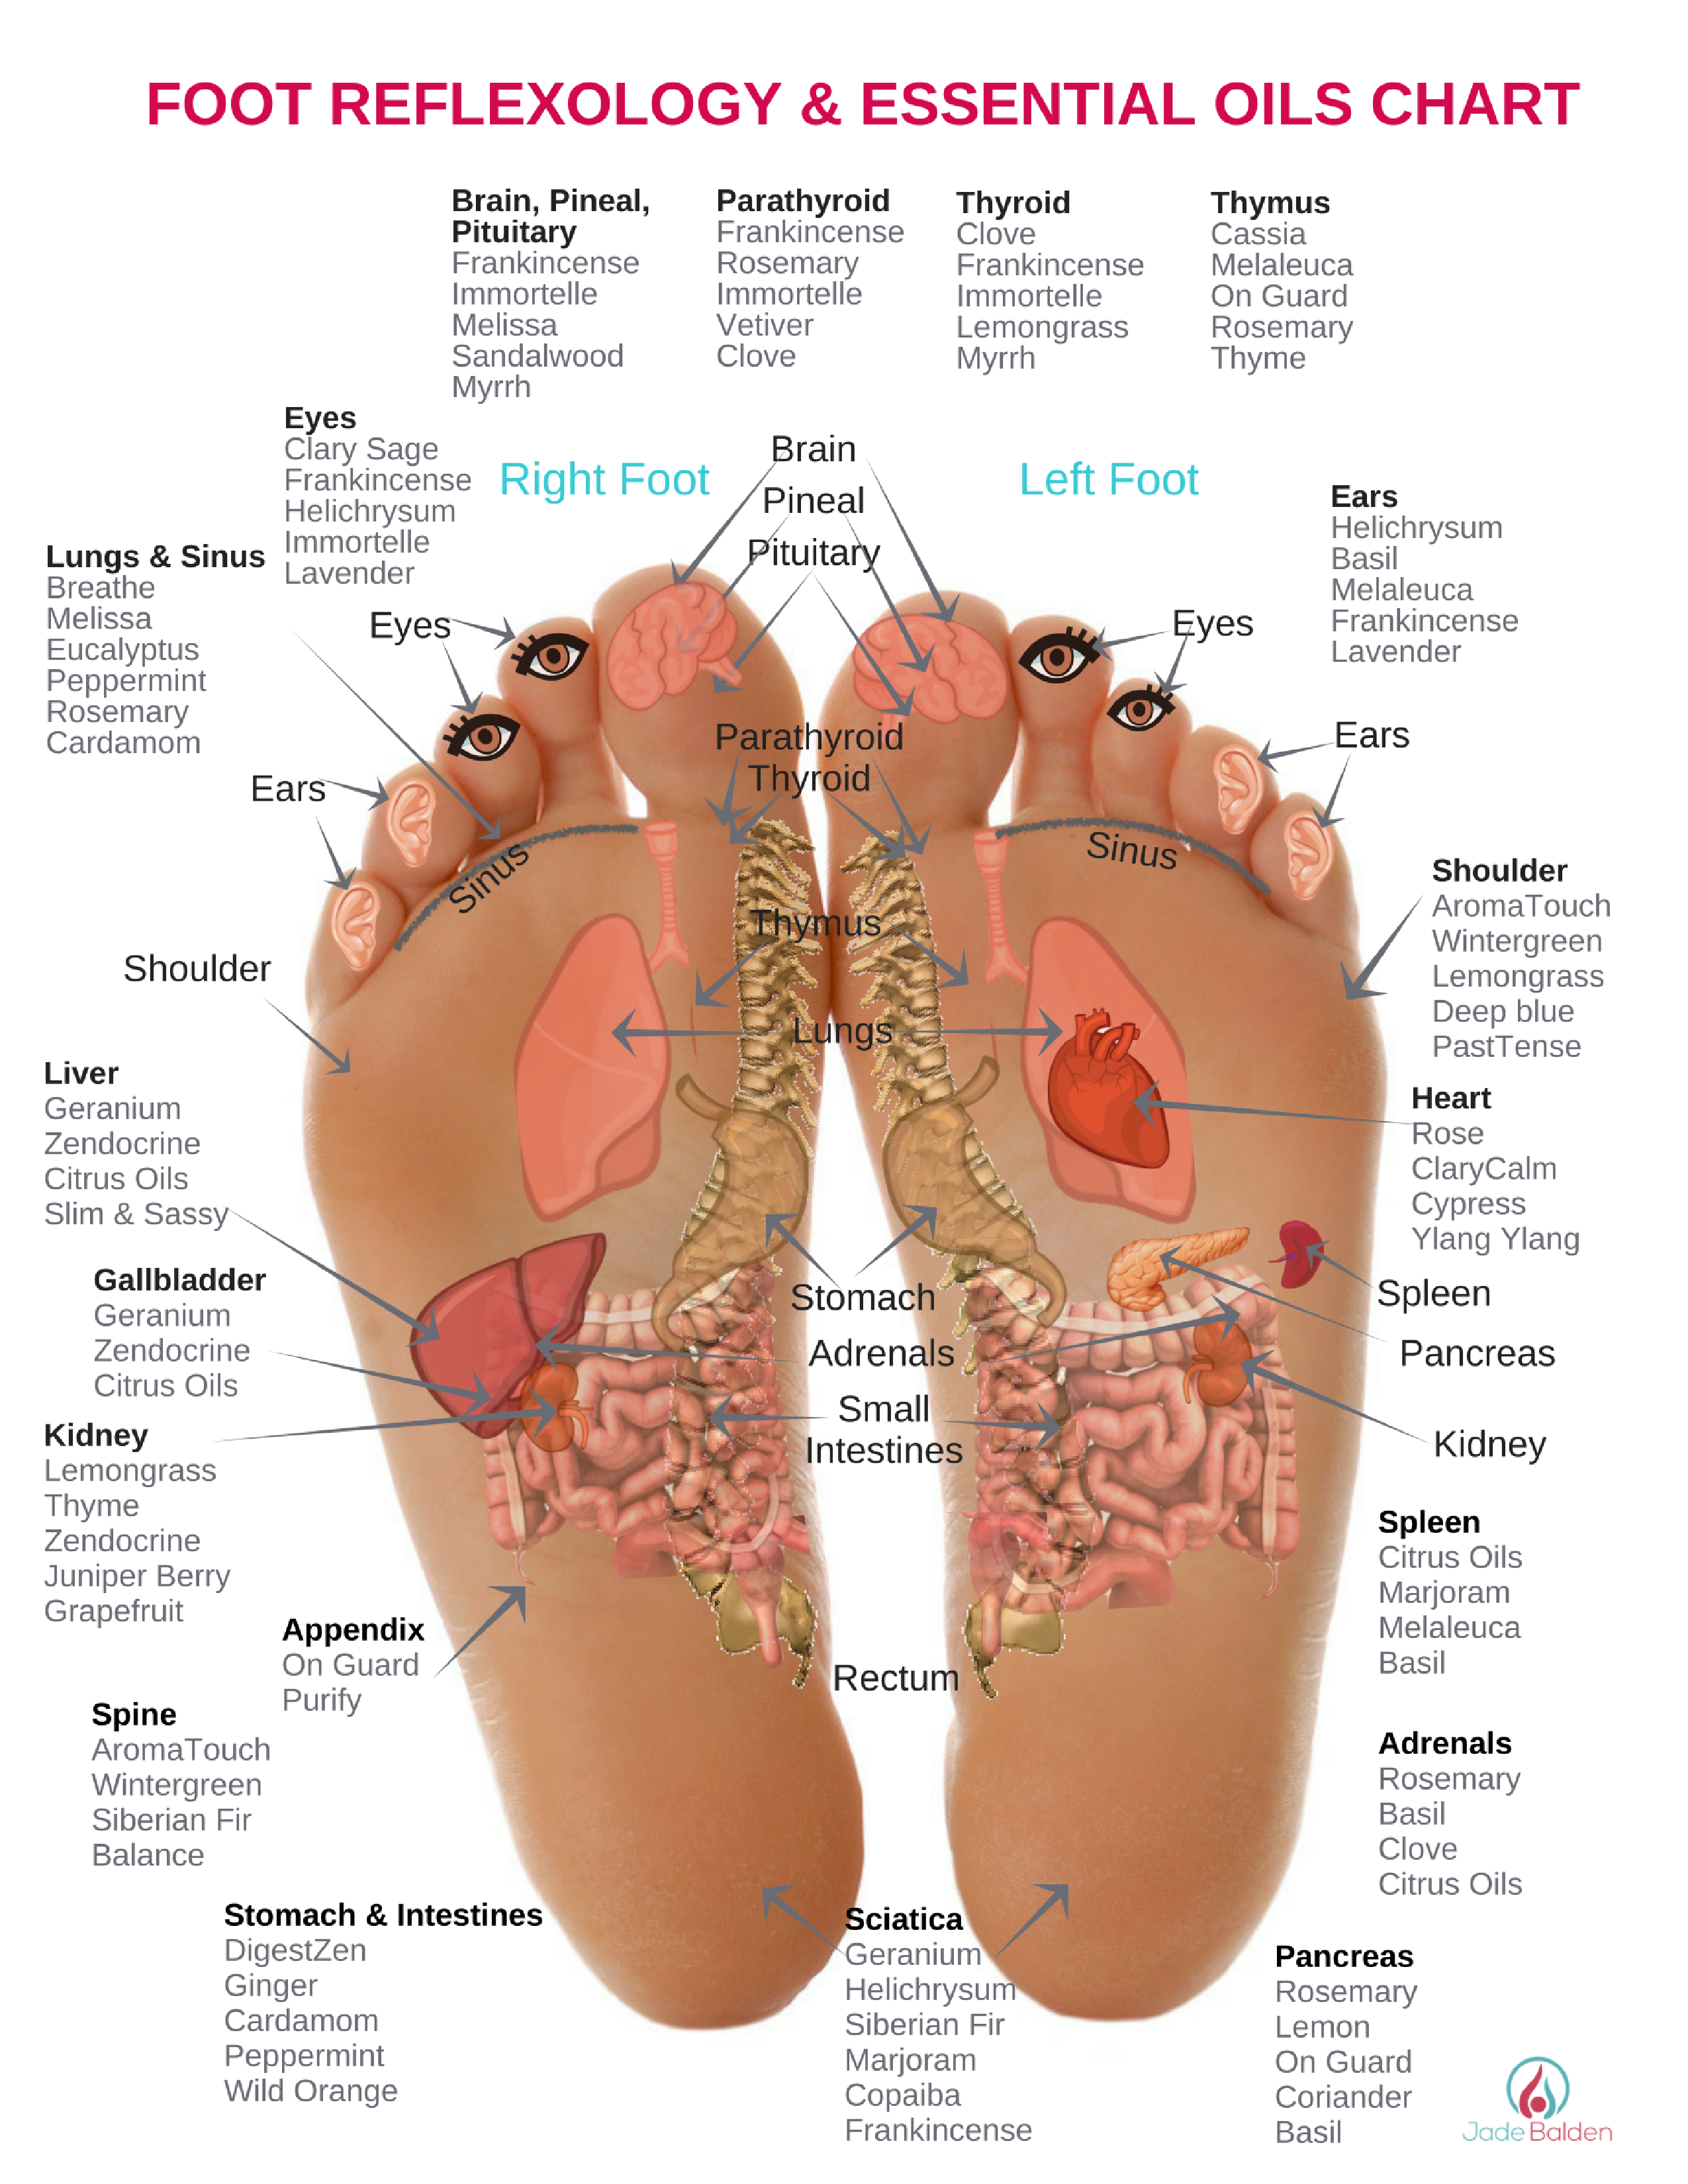 Reflexology Foot Chart Sleep